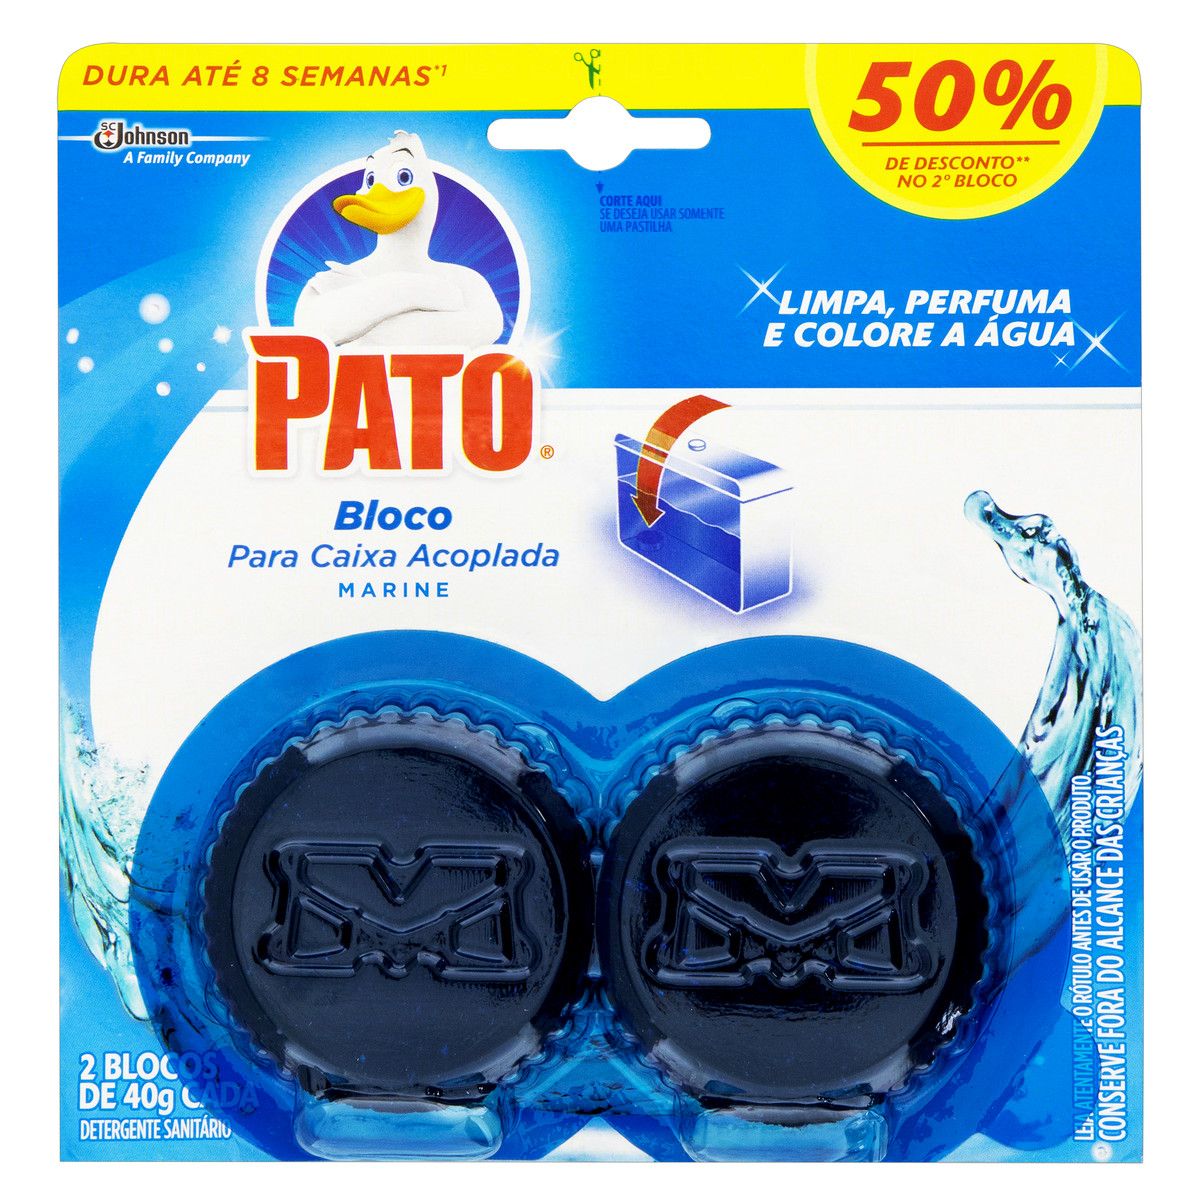 Detergente Sanitário Pato Caixa Acoplada Marine 2 Unidades de 40g